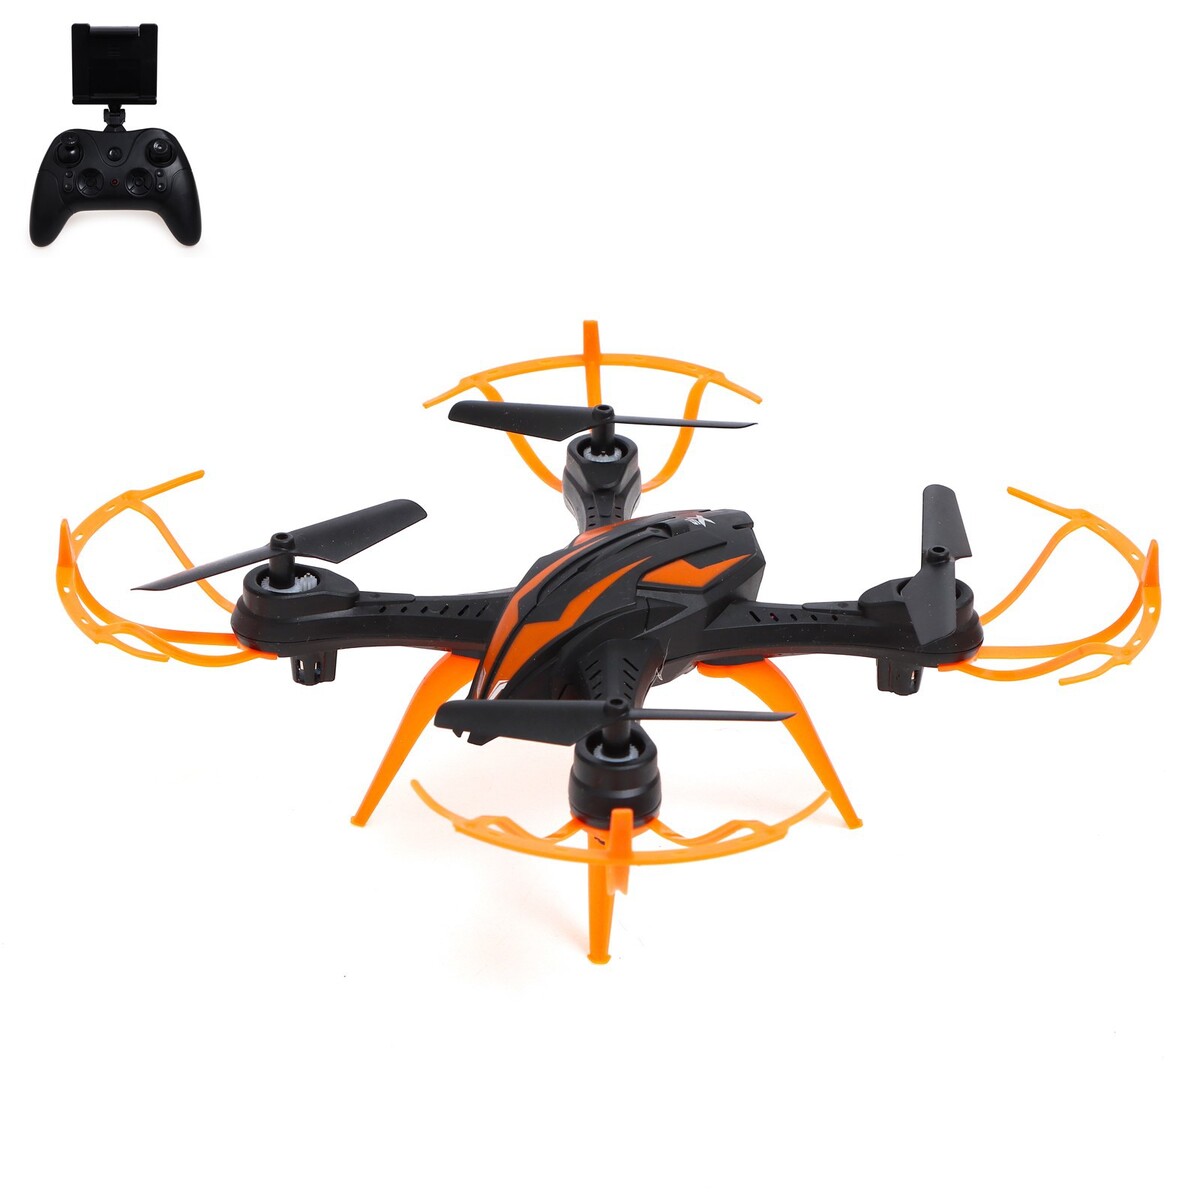 Квадрокоптер lh-x15wf, камера, передача изображения на смартфон, wi-fi, цвет черно-оранжевый квадрокоптер c fly faith 2 pro 6 km